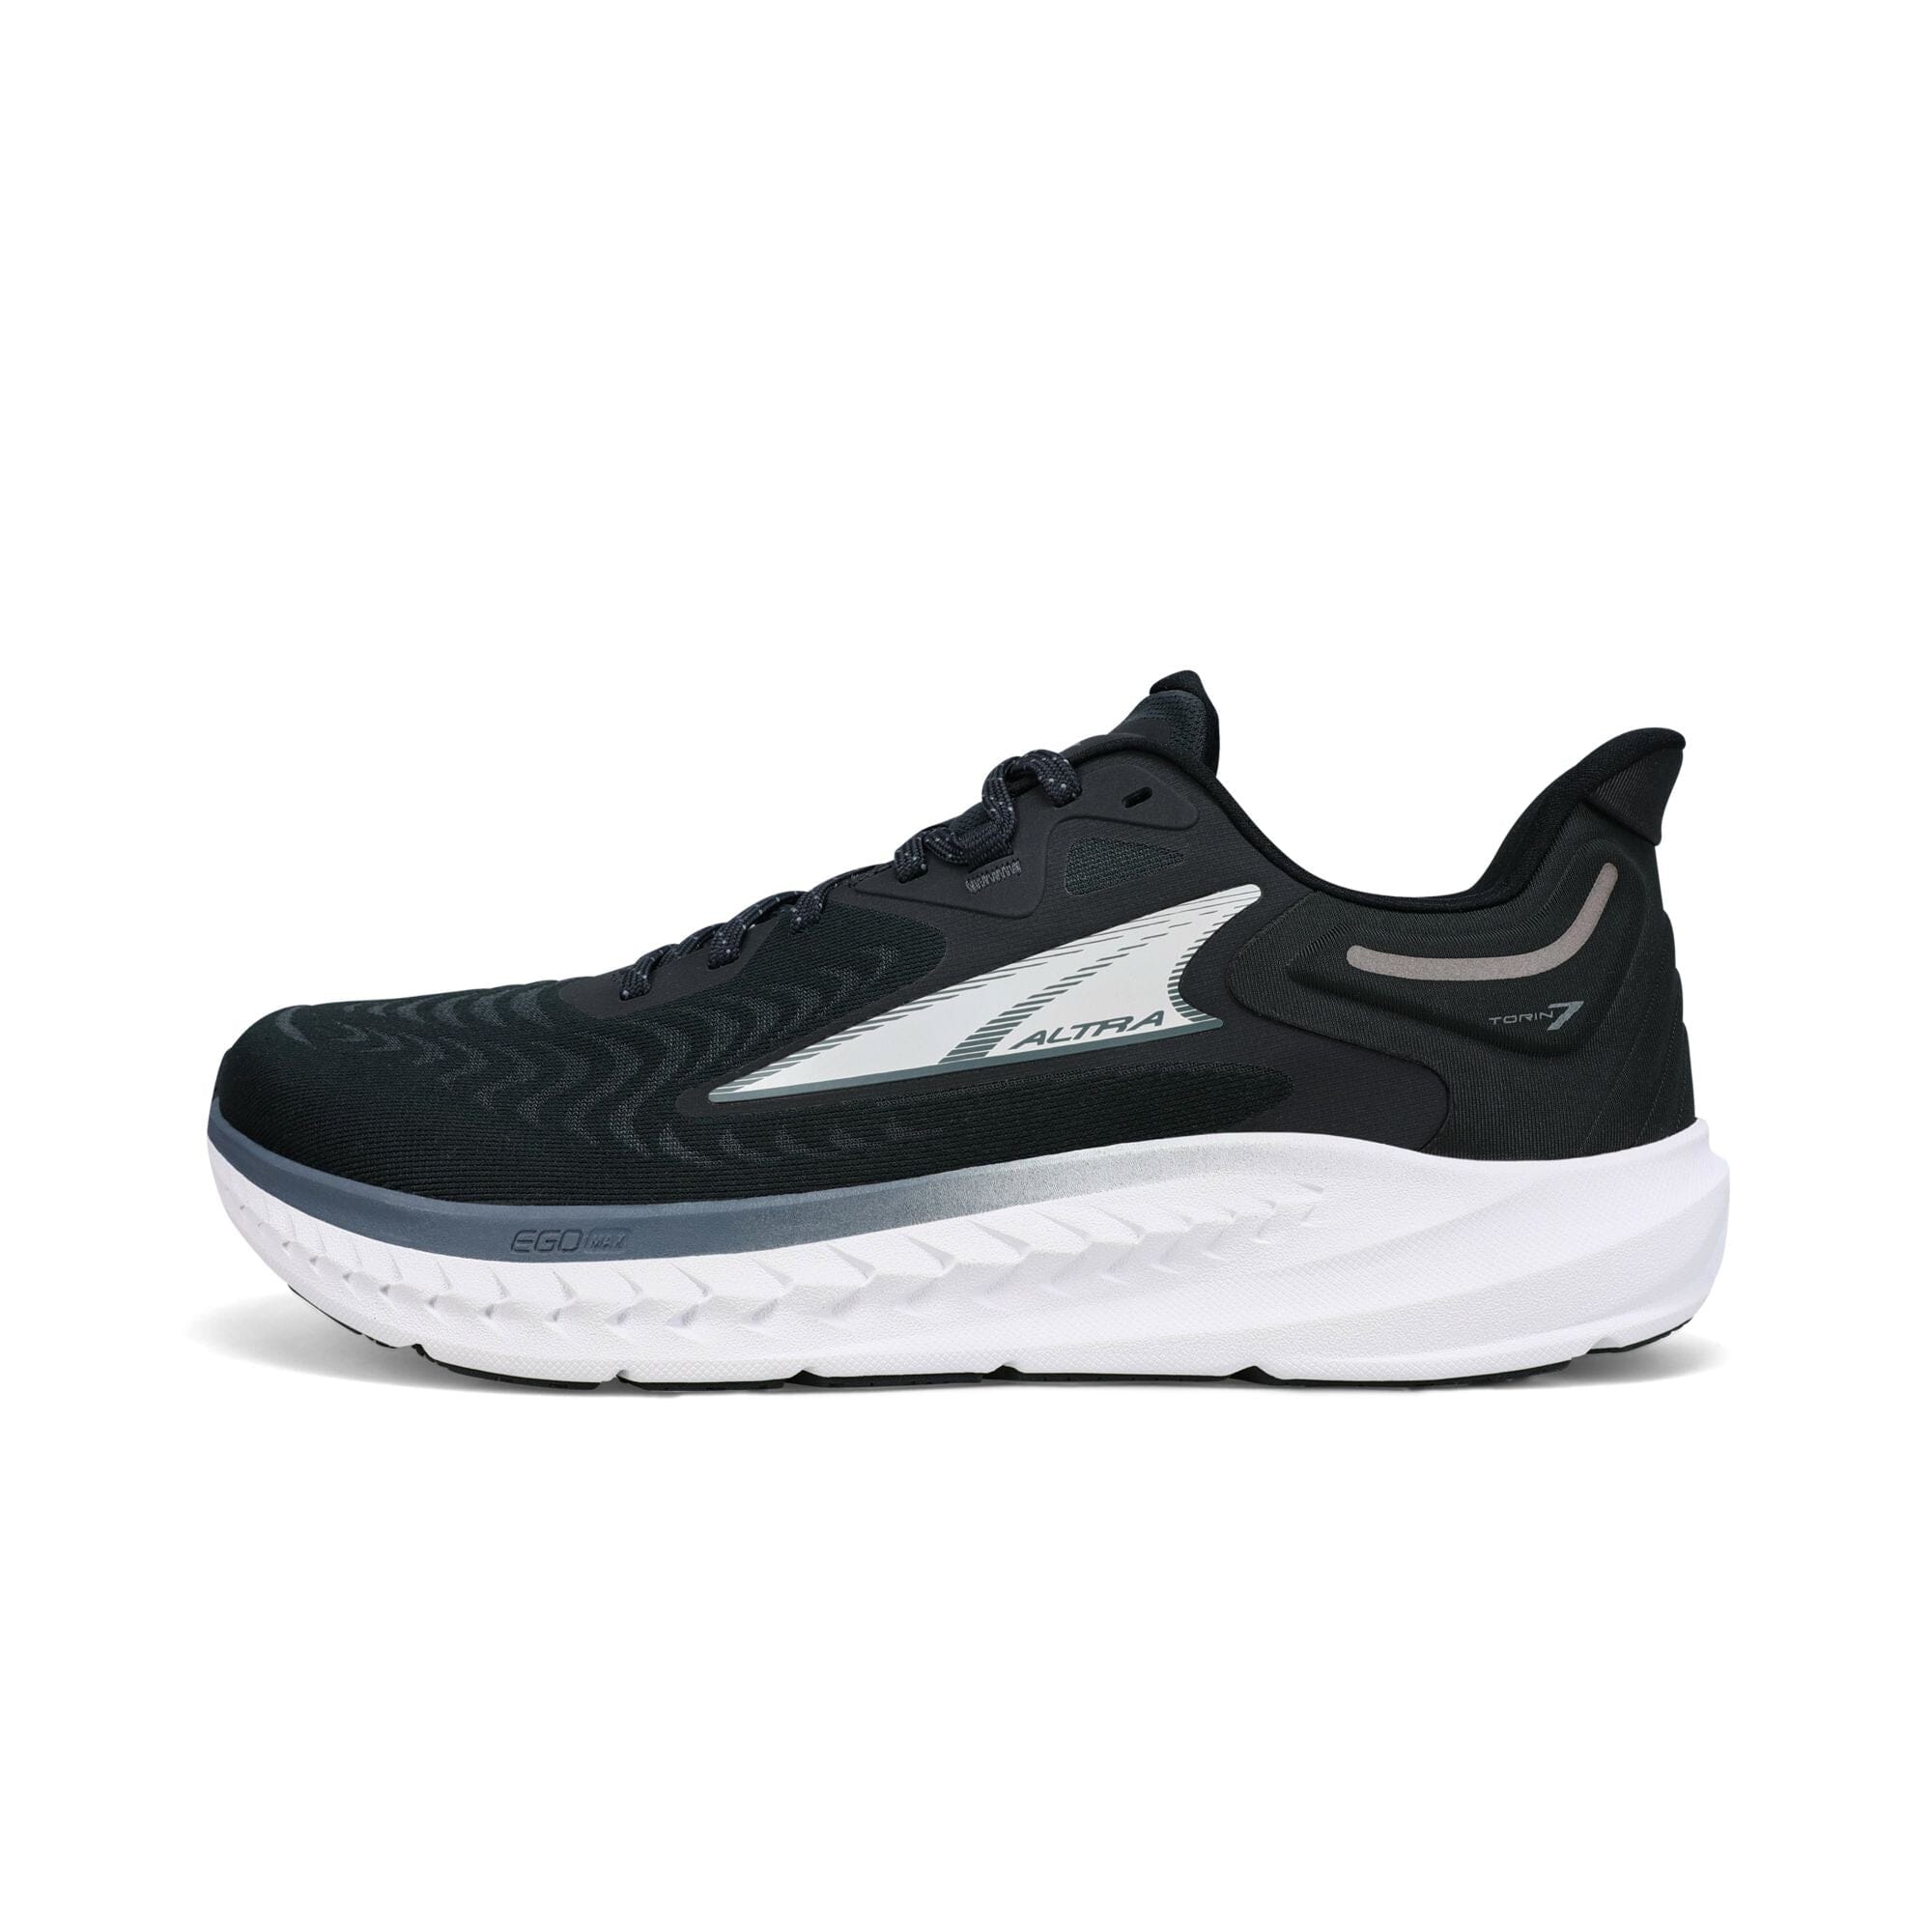 Altra Men's Torin 7 Road Running Shoes Black US 9.5 | EUR 43 | UK 8.5 